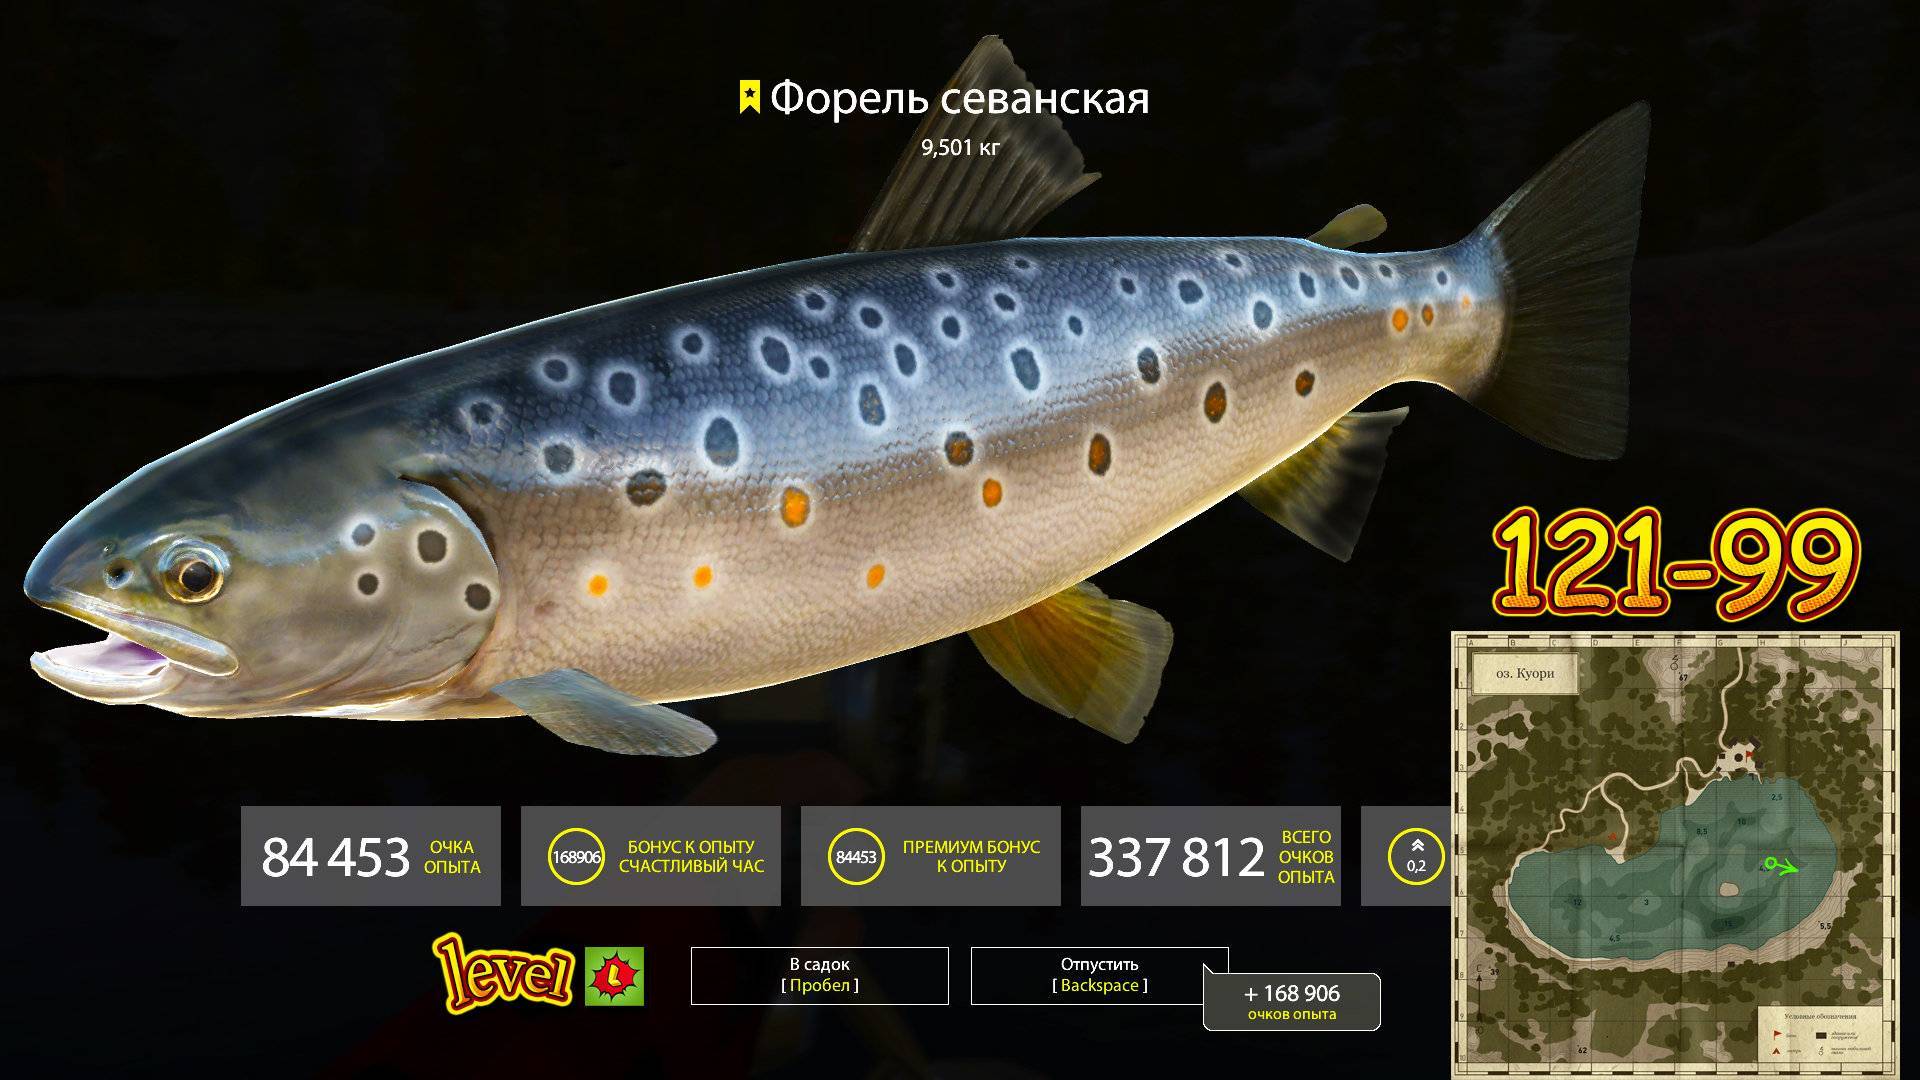 Гольян фото и описание – каталог рыб, смотреть онлайн